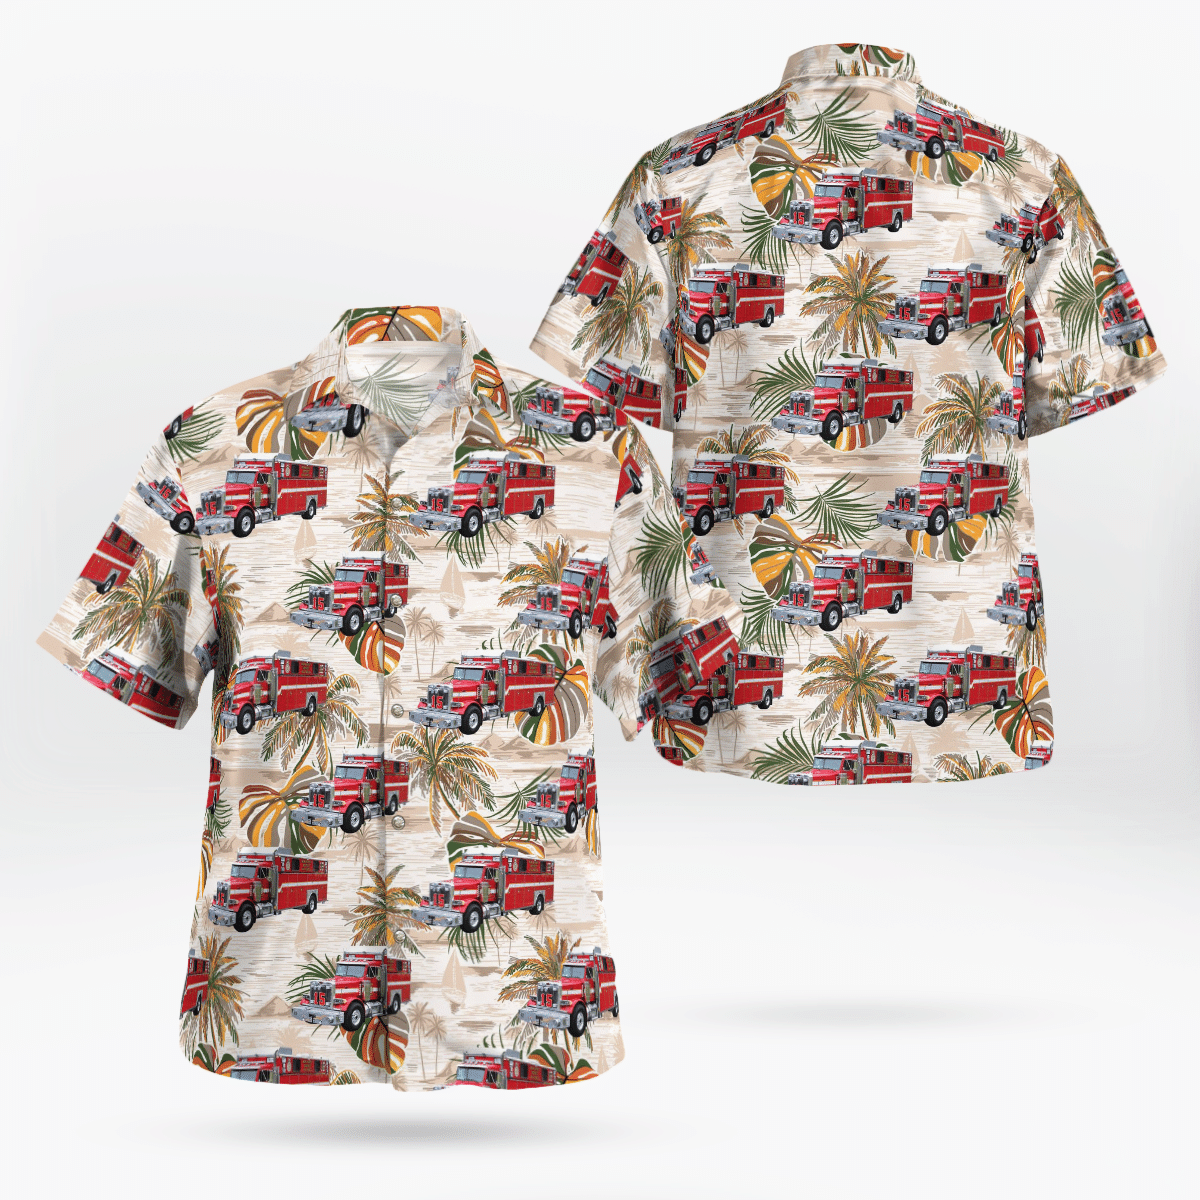 Best Hawaiian shirts 2022 219